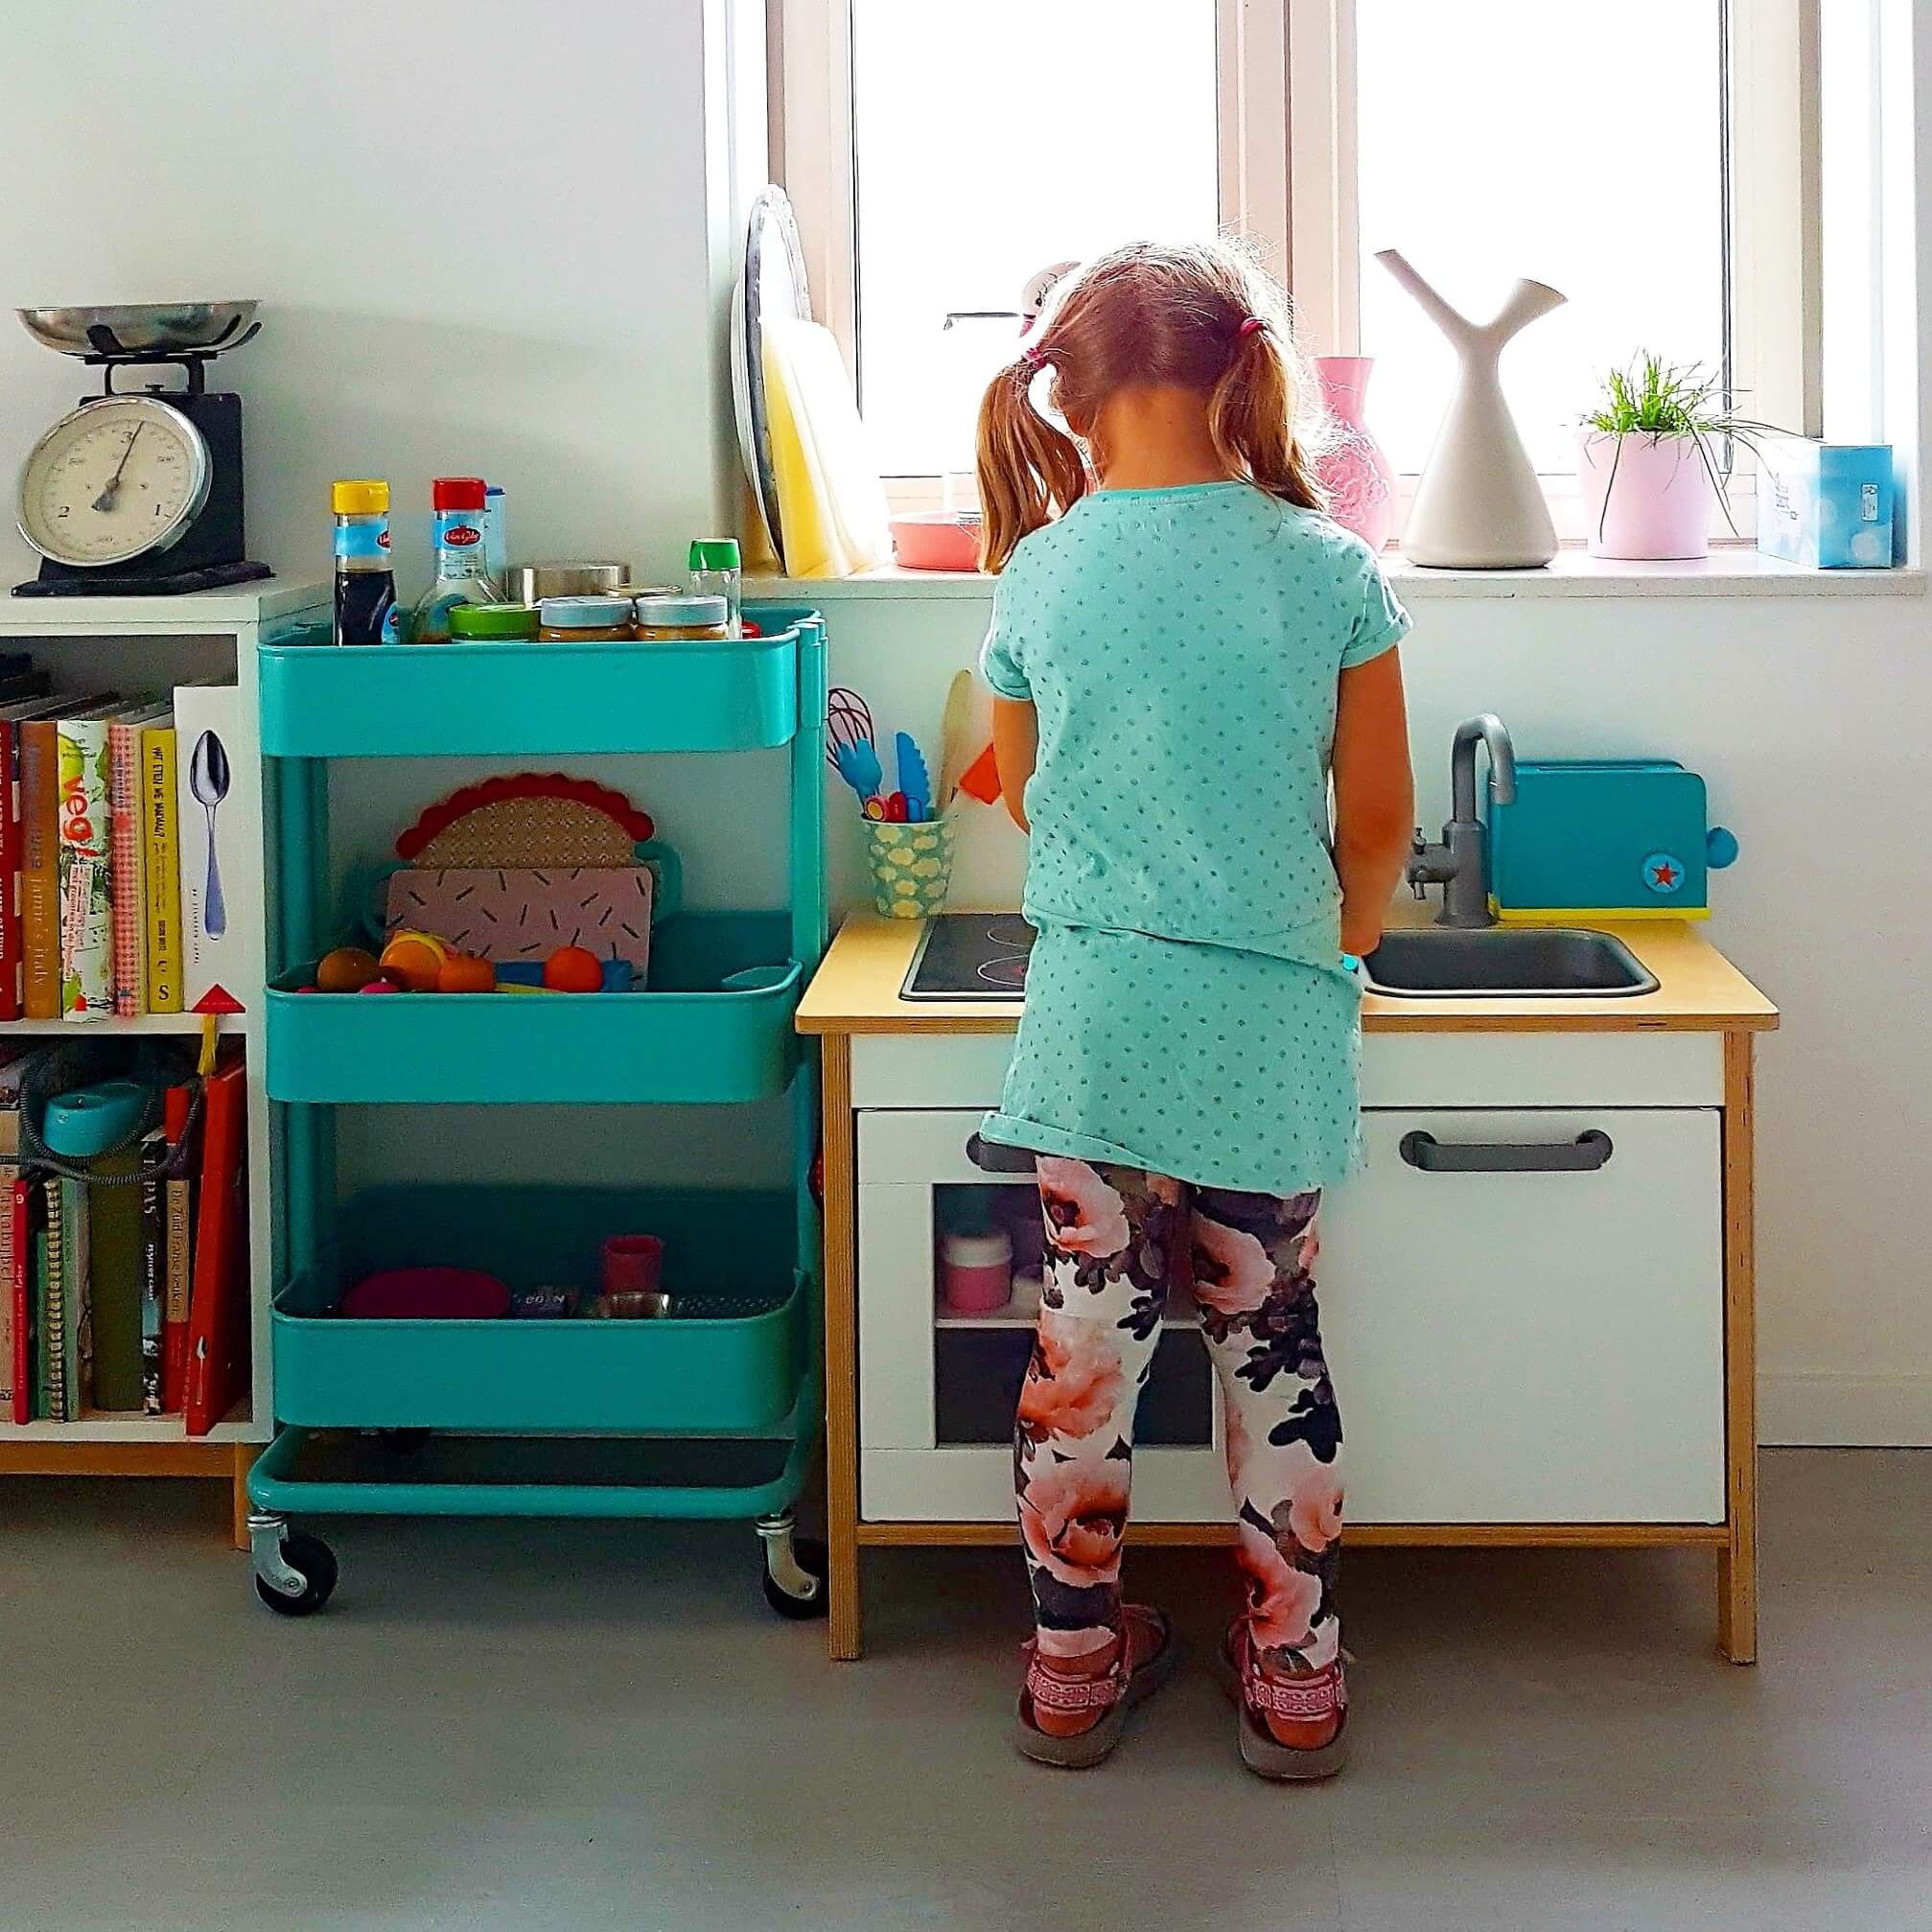 Ideeën voor een kinderkeuken: zelf maken, opknappen of kopen. Zoals het bekende Ikea duktig speelkeukentje. 